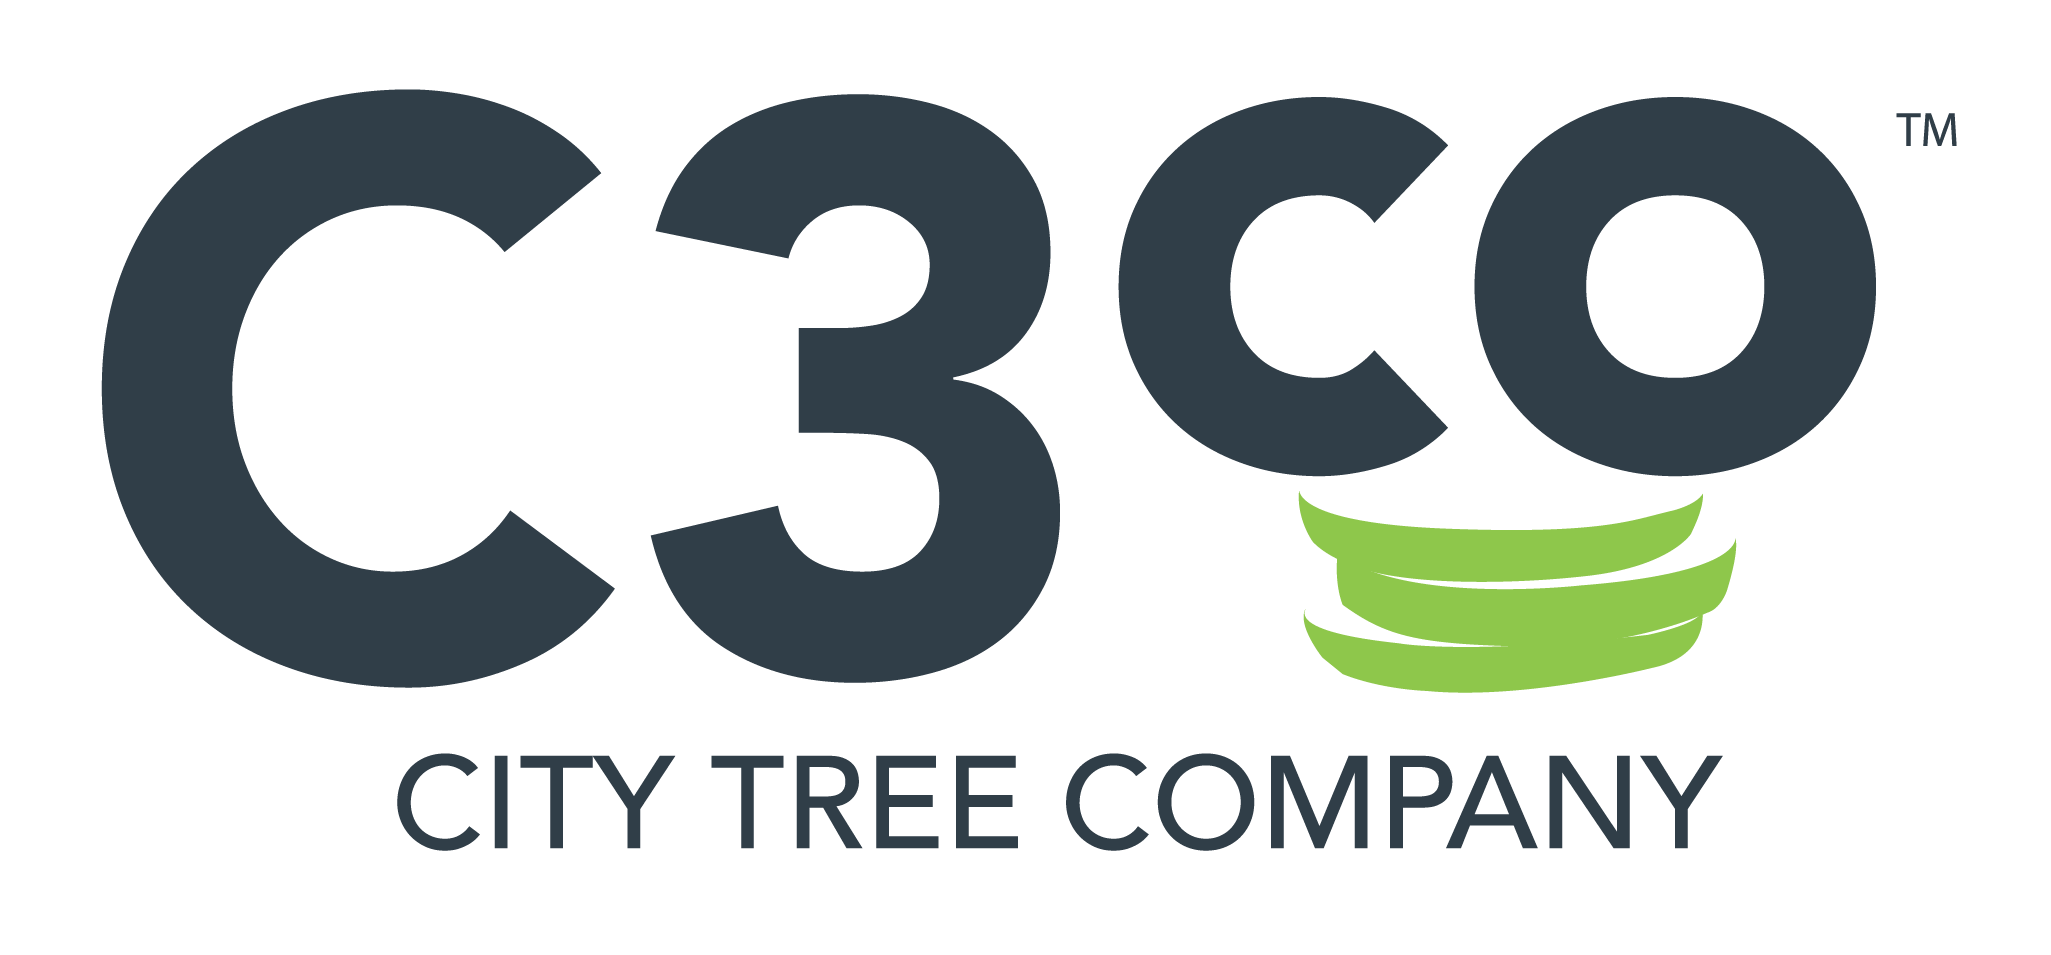 City Tree Company